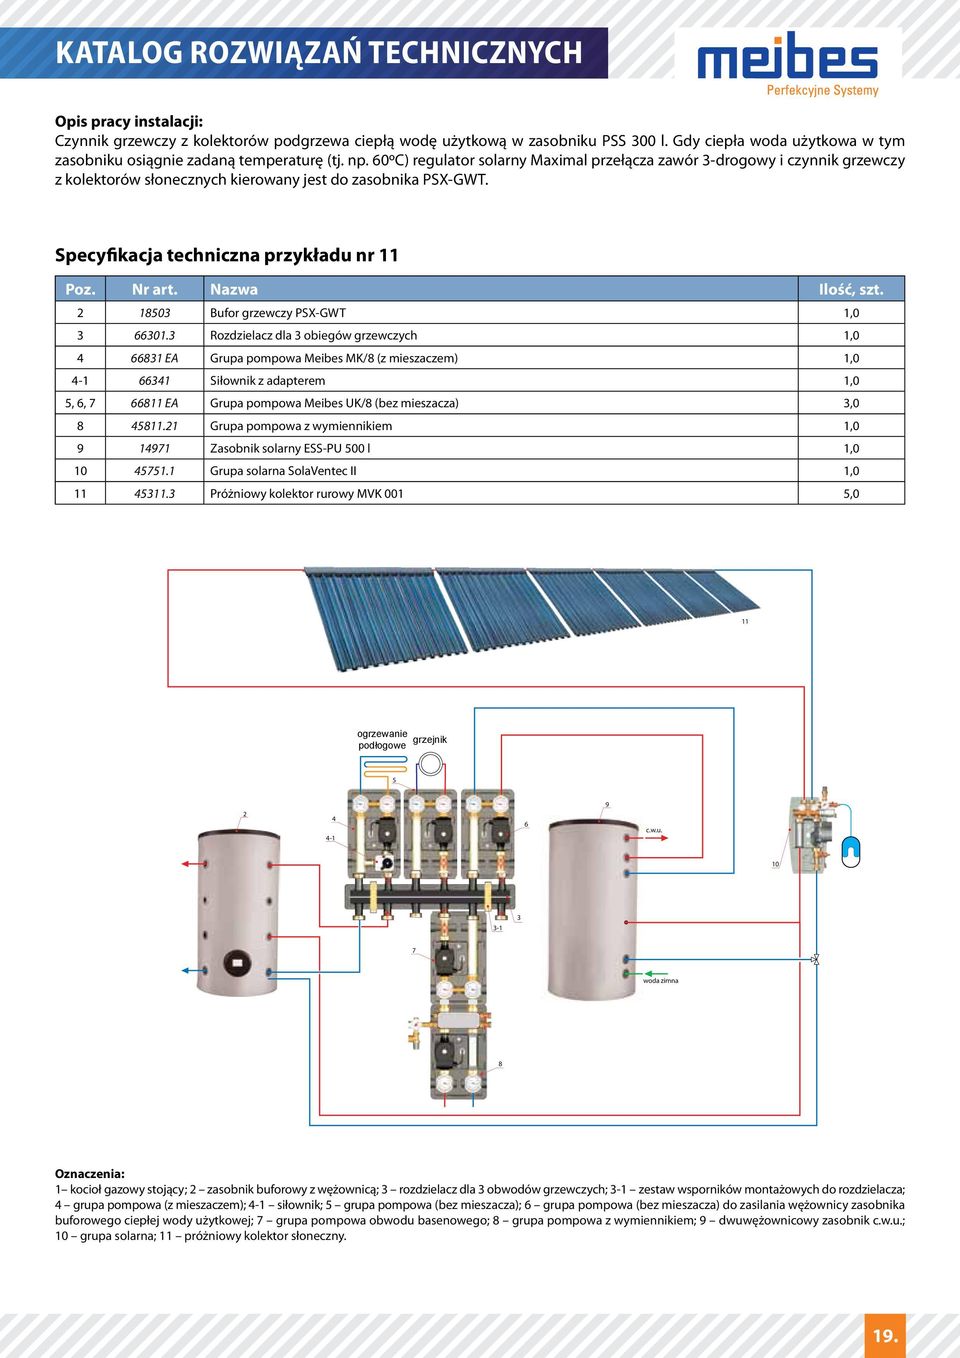 0oC) regulator solarny aximal przełącza zawór -drogowy i czynnik grzewczy z kolektorów słonecznych kierowany jest do zasobnika PSX-GW.